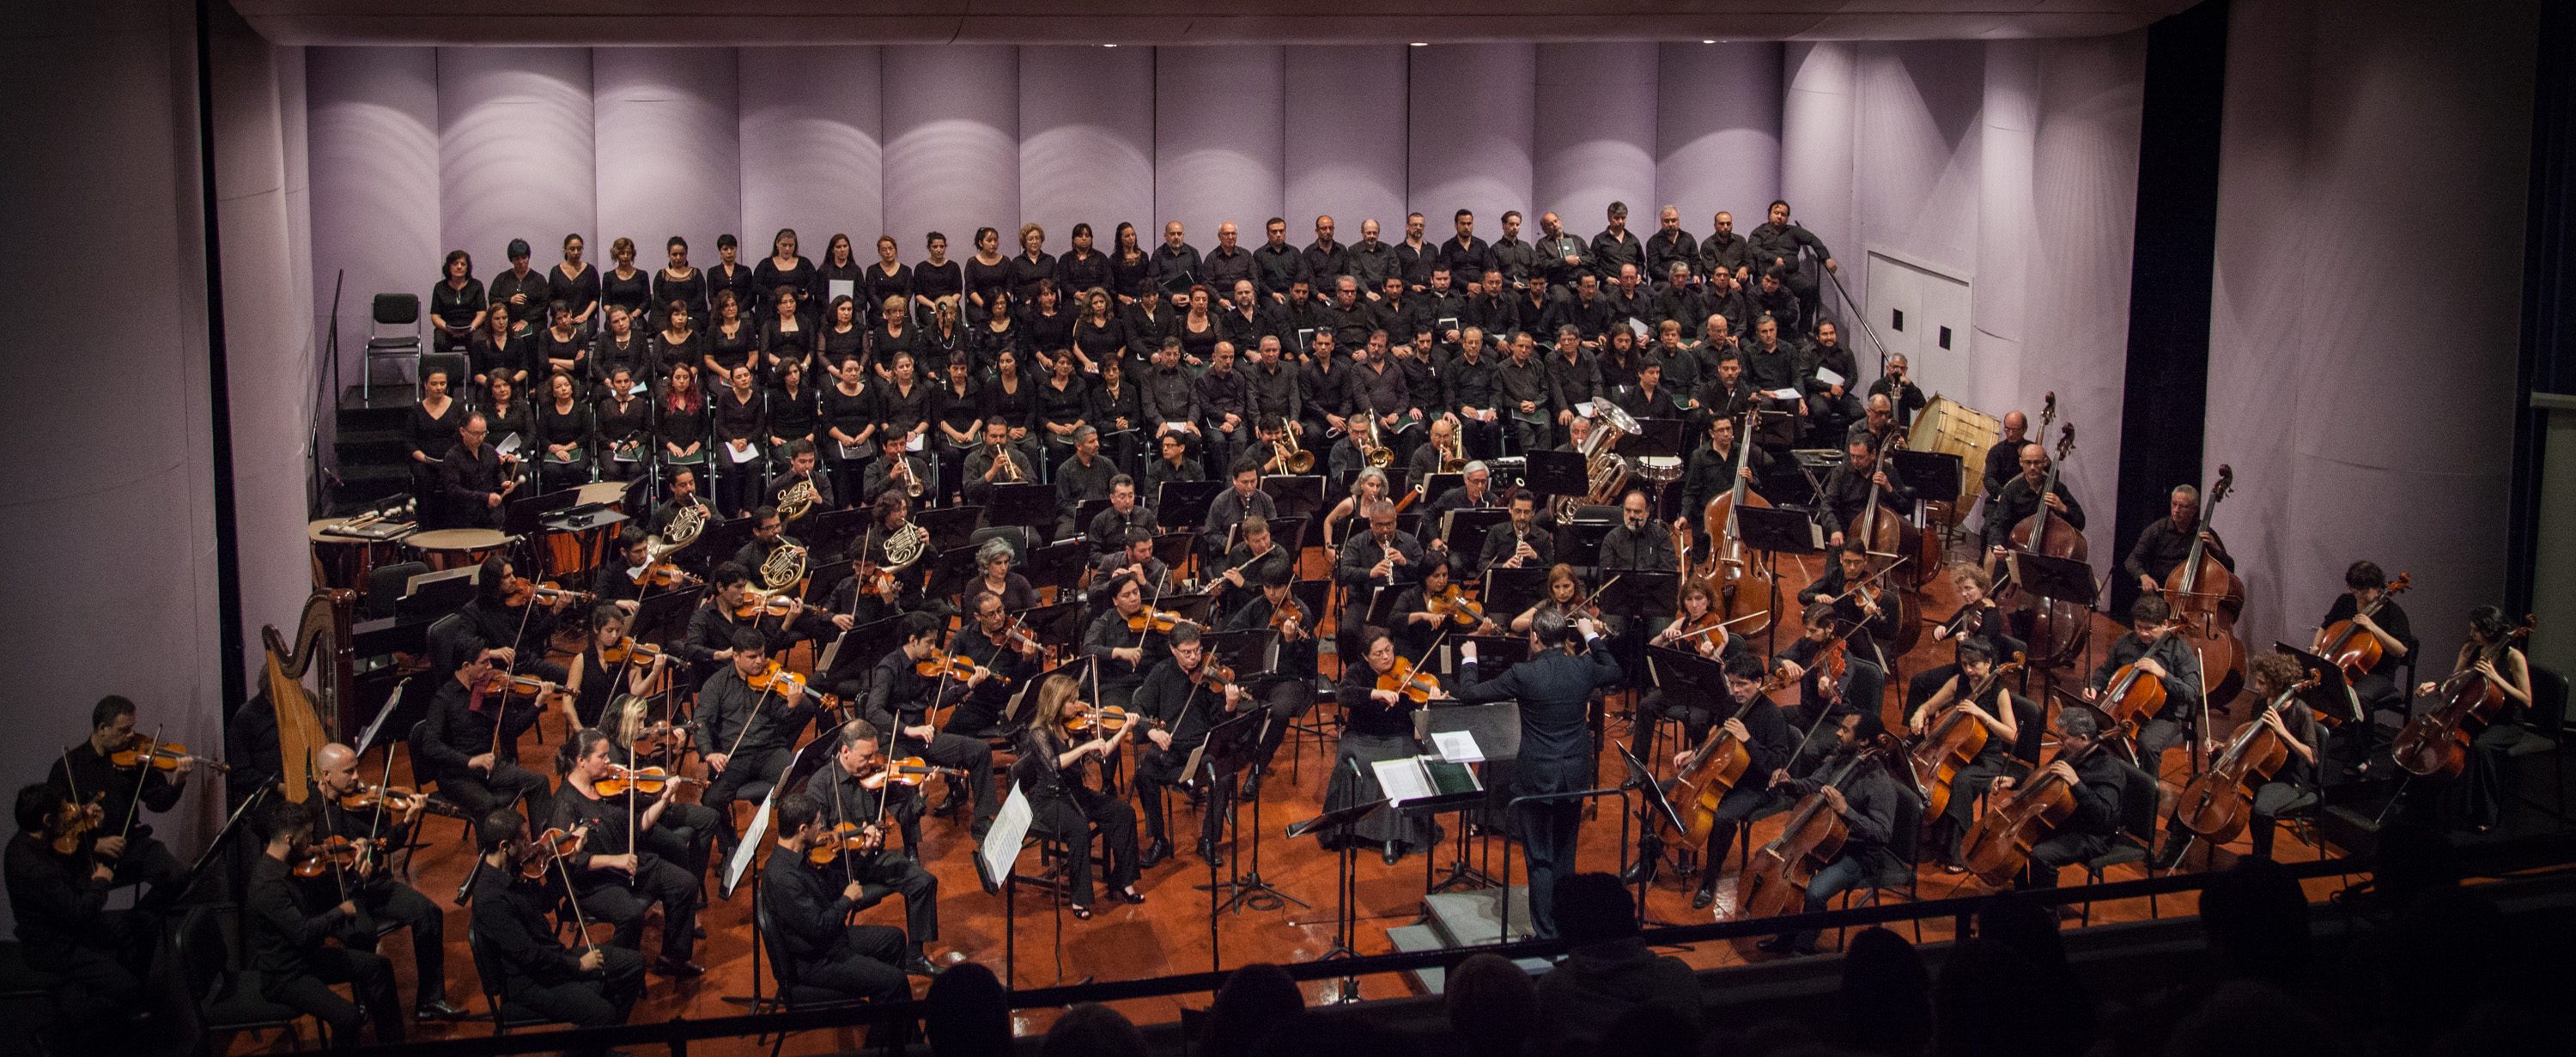 La Orquesta Sinfónica de Chile, junto al Coro Sinfónico y la Camerata Vocal de la Universidad de Chile, dirigidos por François López-Ferrer. foto ceac